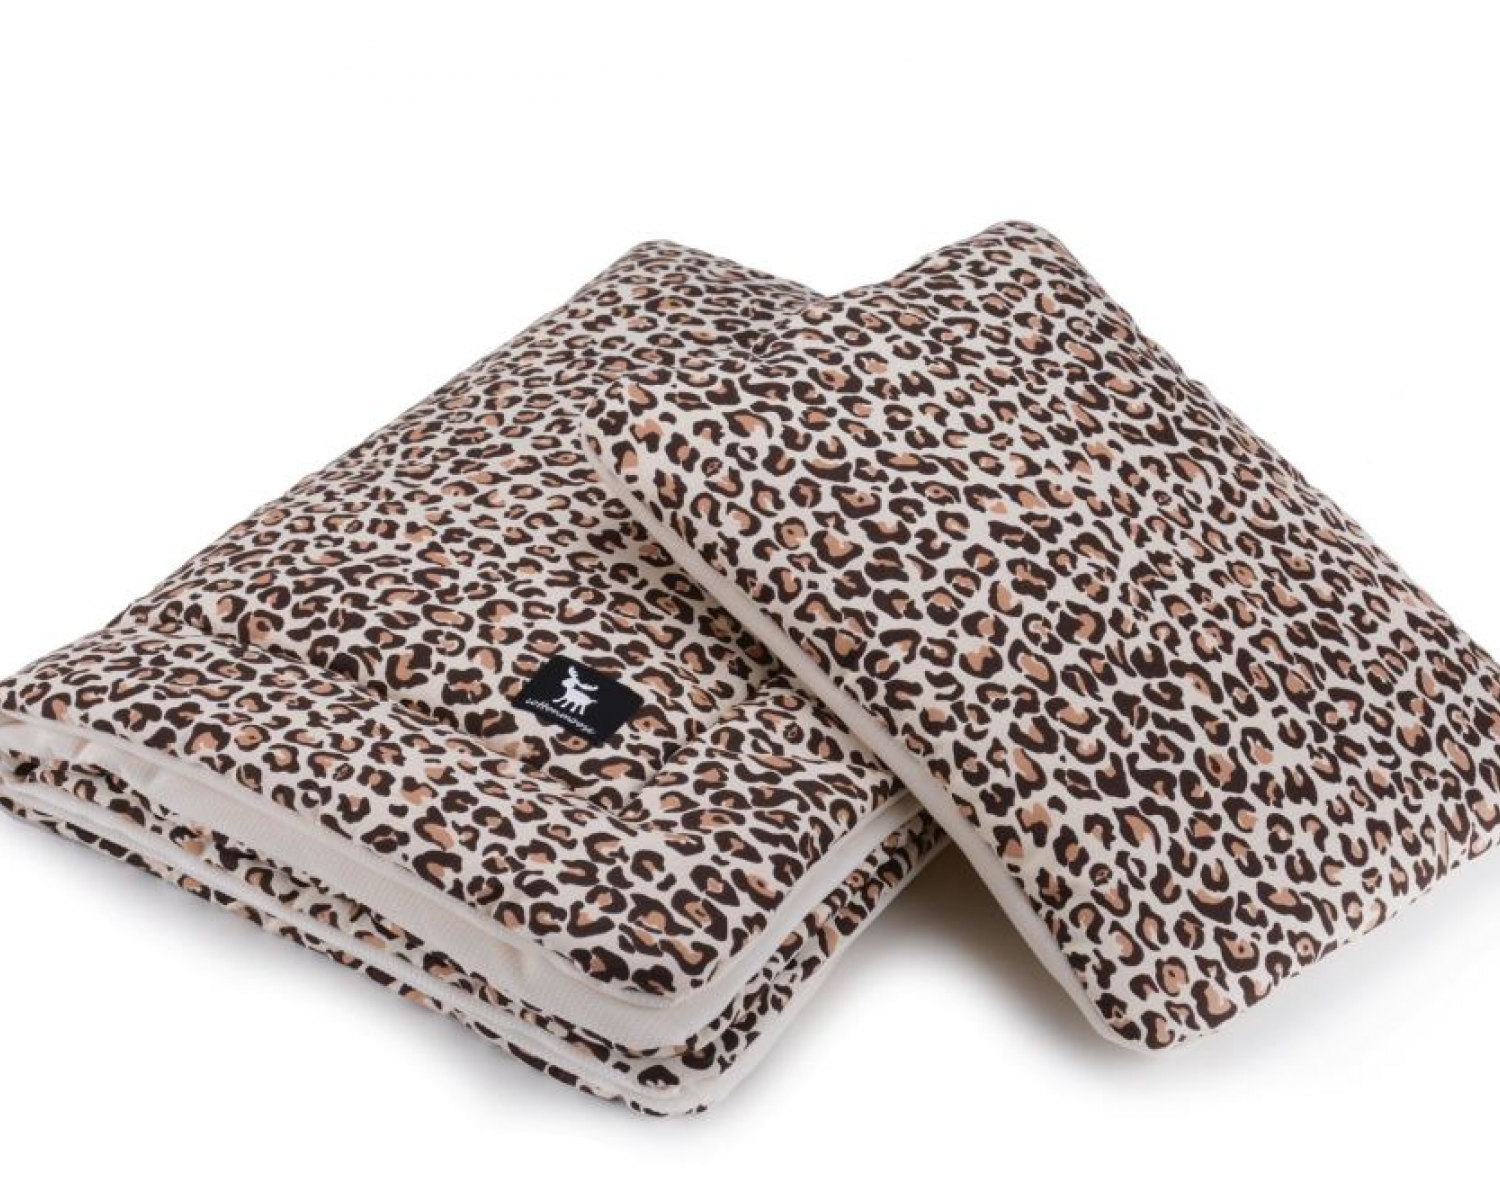 Плед с подушкой Cottonmoose Cotton Velvet 408/79/118 pantera cotton velvet cream леопардовый с кремовым (бархат)